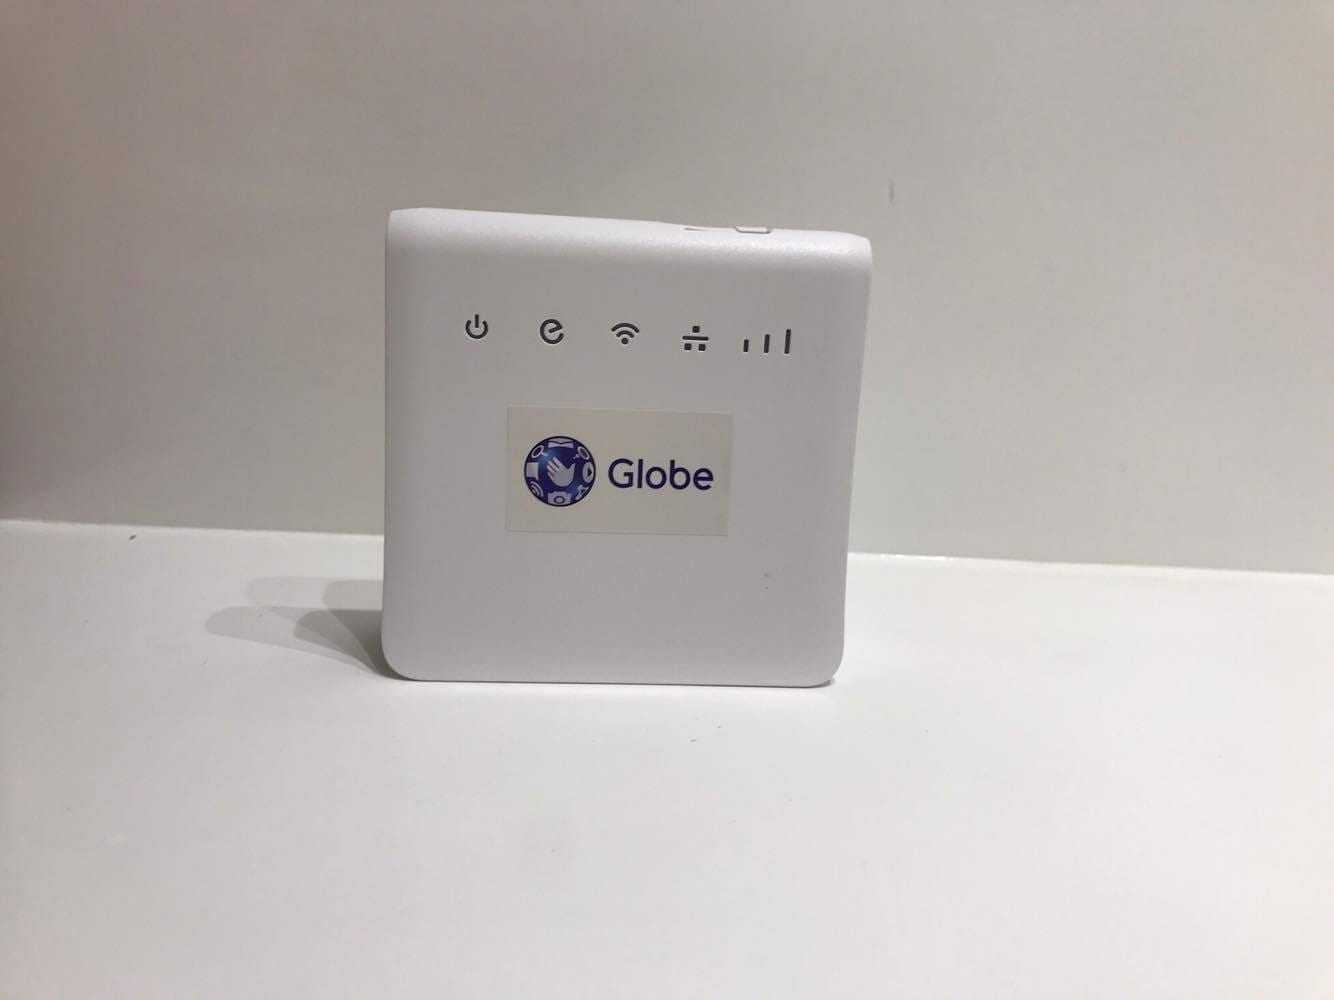 globe prepaid home wifi unboxing header